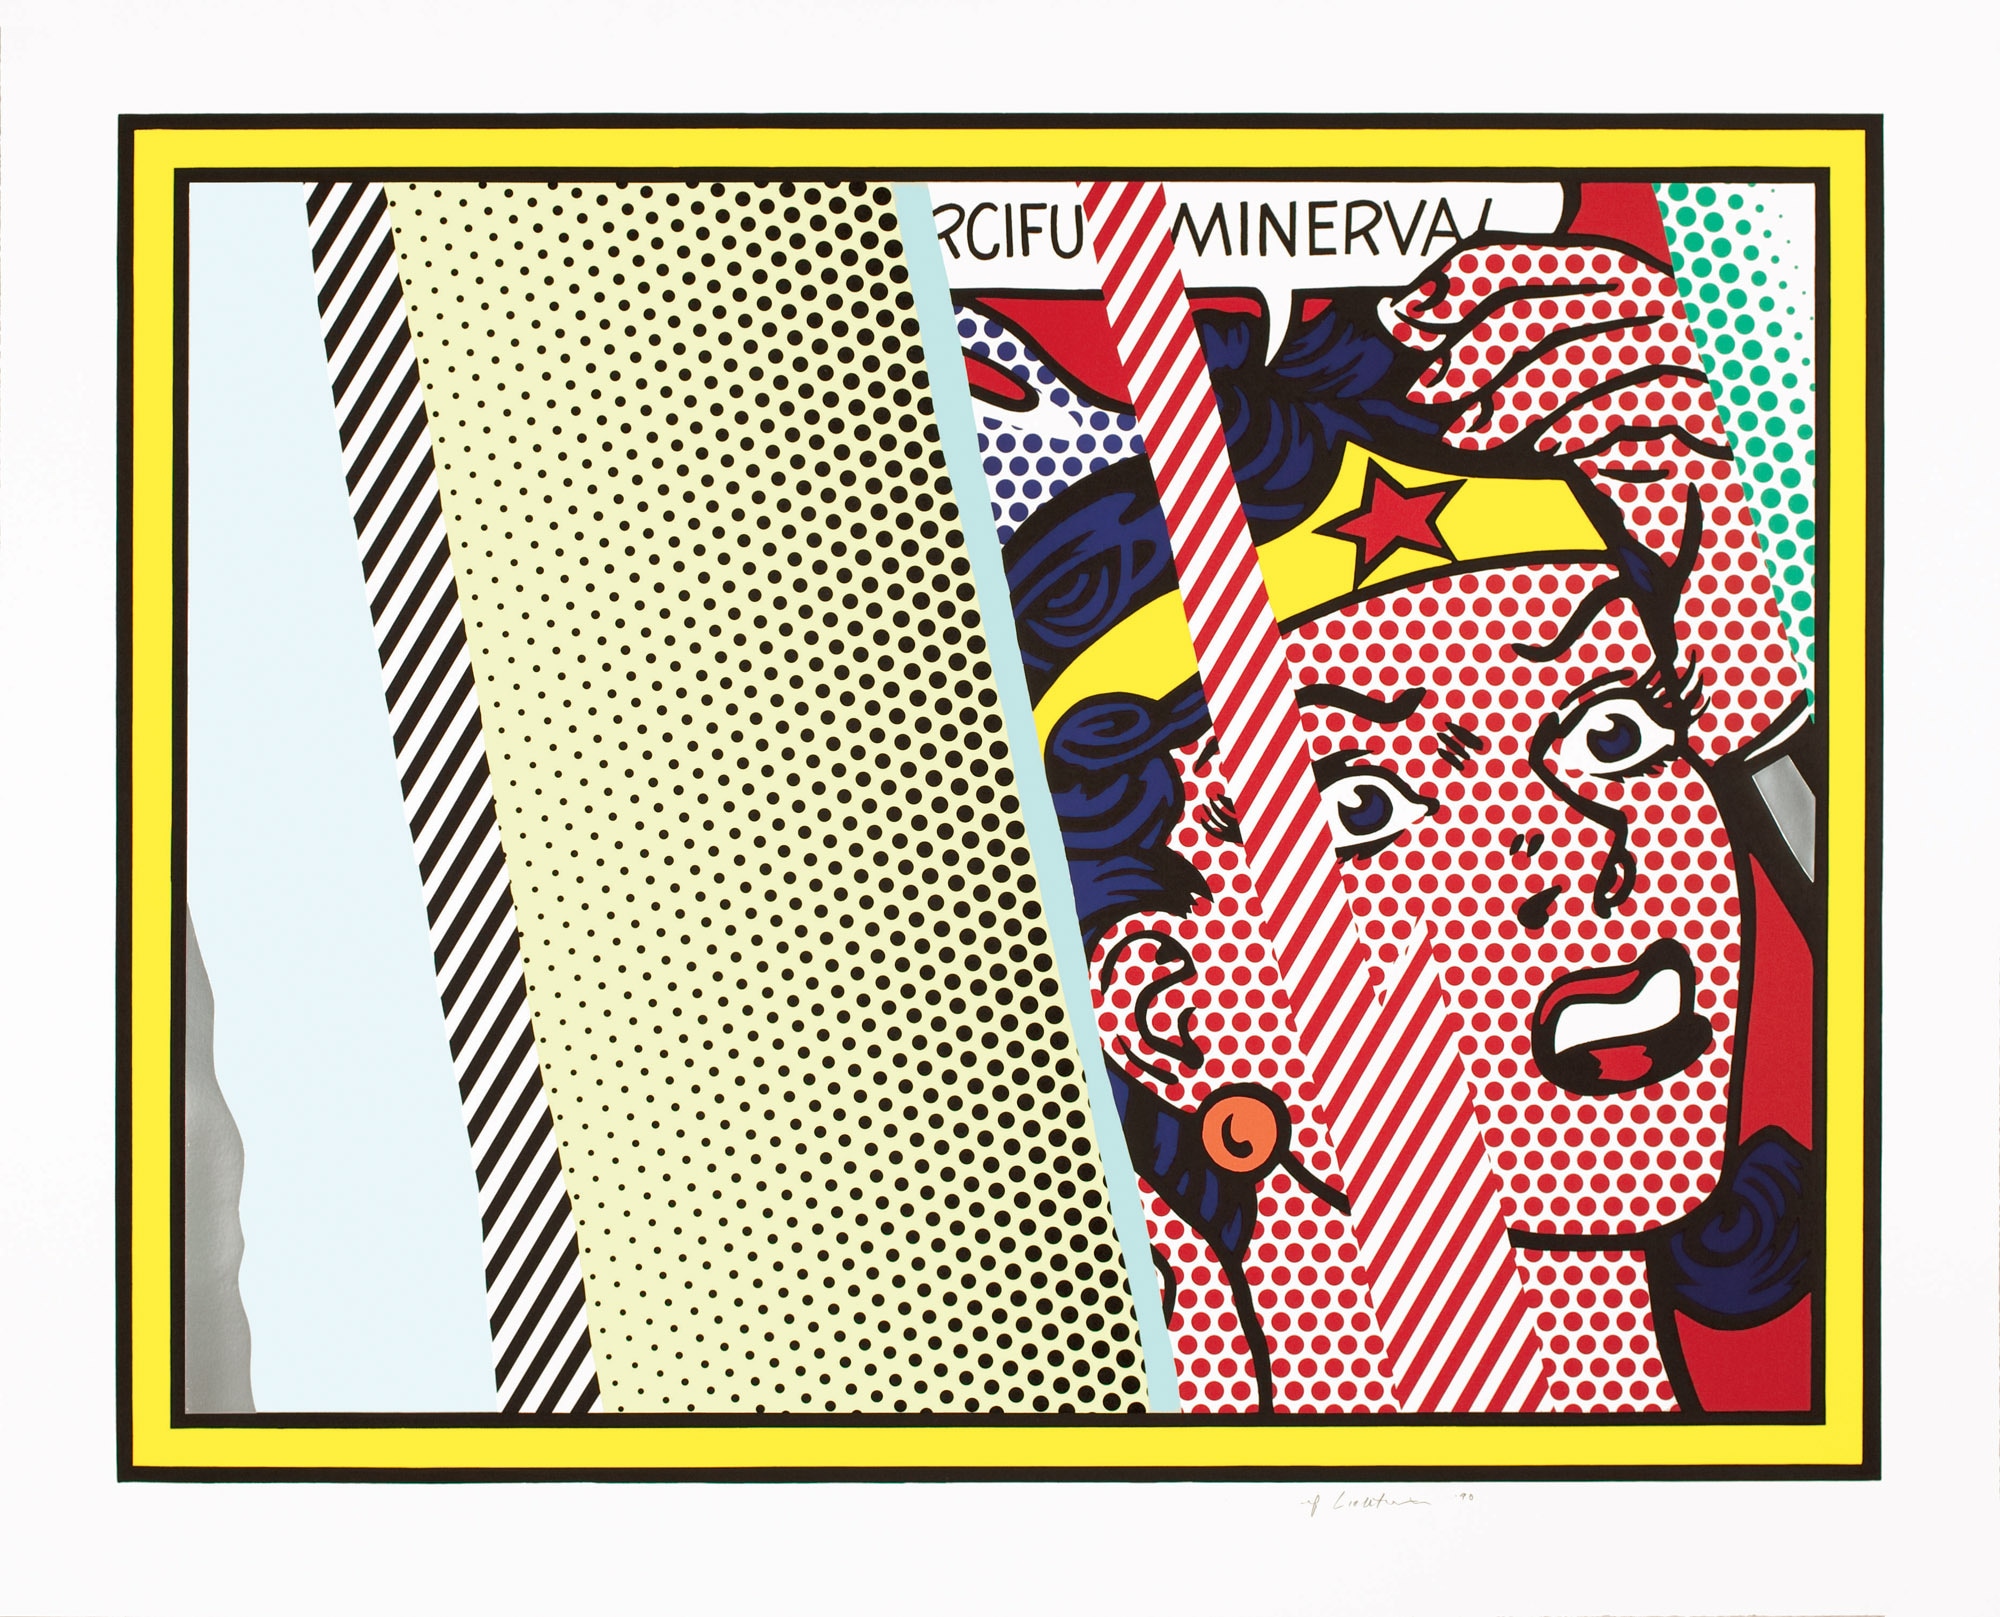 Roy Lichtenstein Reflections on Minerva 1990 Litografia, serigrafia, rilievo and collage in PVC metallizzato con goffratura su carta Somerset fatta a mano 106.7 x 131.4 cm Collezione privata ©Estate of Roy Lichtenstein